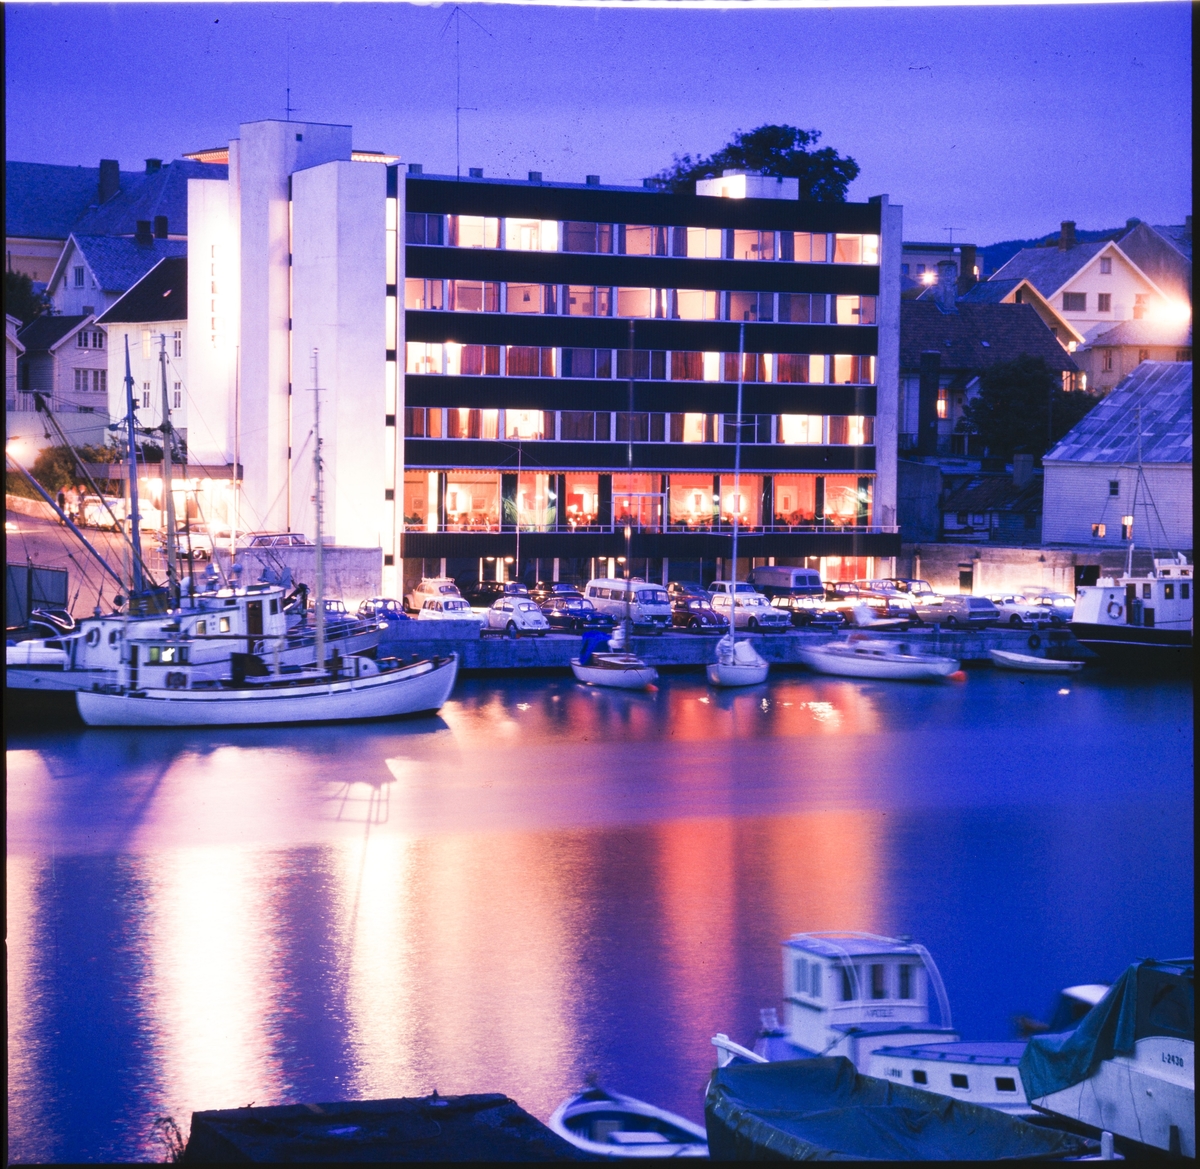 Hotel La Mer i Haugesund tatt over Smedasundet fra Risøy. Senere kjent som Hotell Maritim. Bildet er tatt i kveldslys. En fiskebåt ligger i forgrunnen.